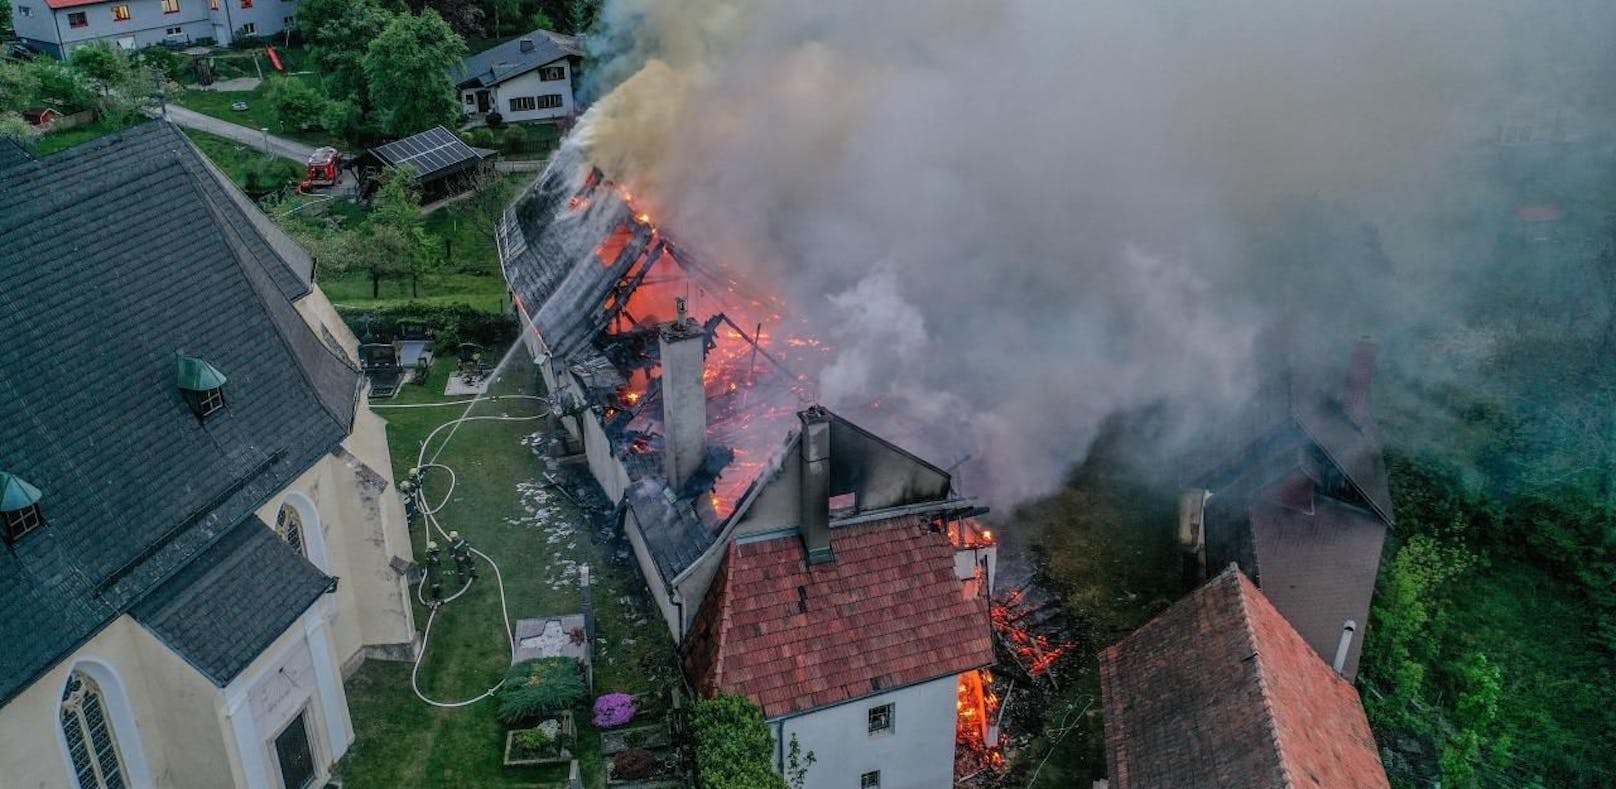 Großbrand im Pfarrhof: Die Feuerwehr löschte.